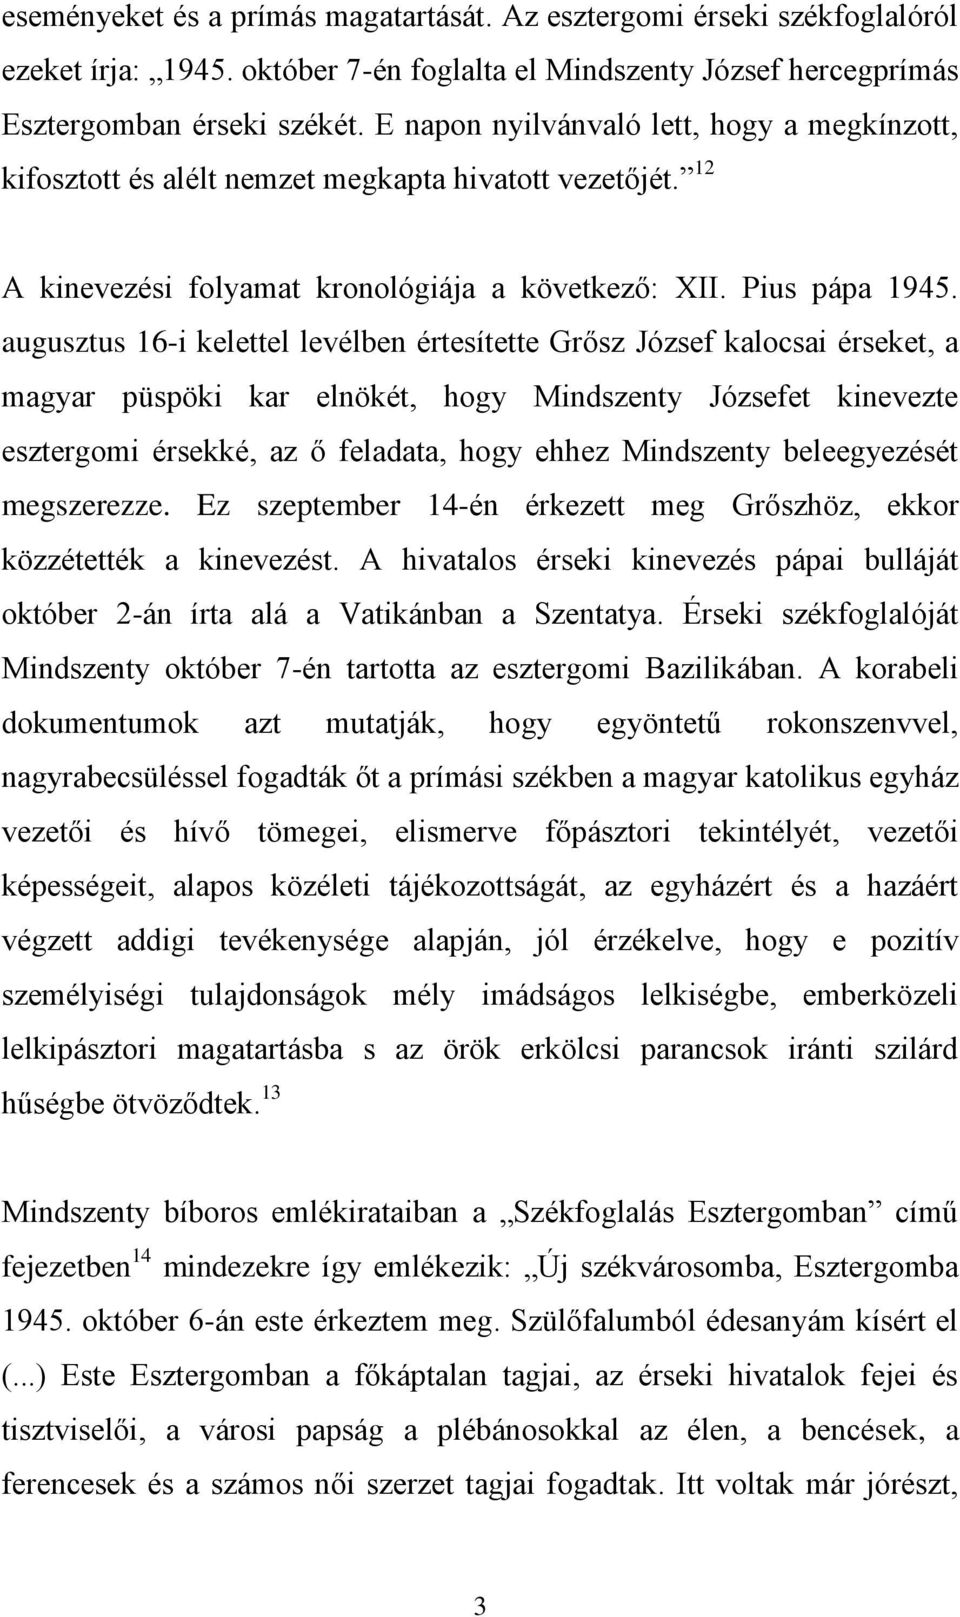 augusztus 16-i kelettel levélben értesítette Grősz József kalocsai érseket, a magyar püspöki kar elnökét, hogy Mindszenty Józsefet kinevezte esztergomi érsekké, az ő feladata, hogy ehhez Mindszenty